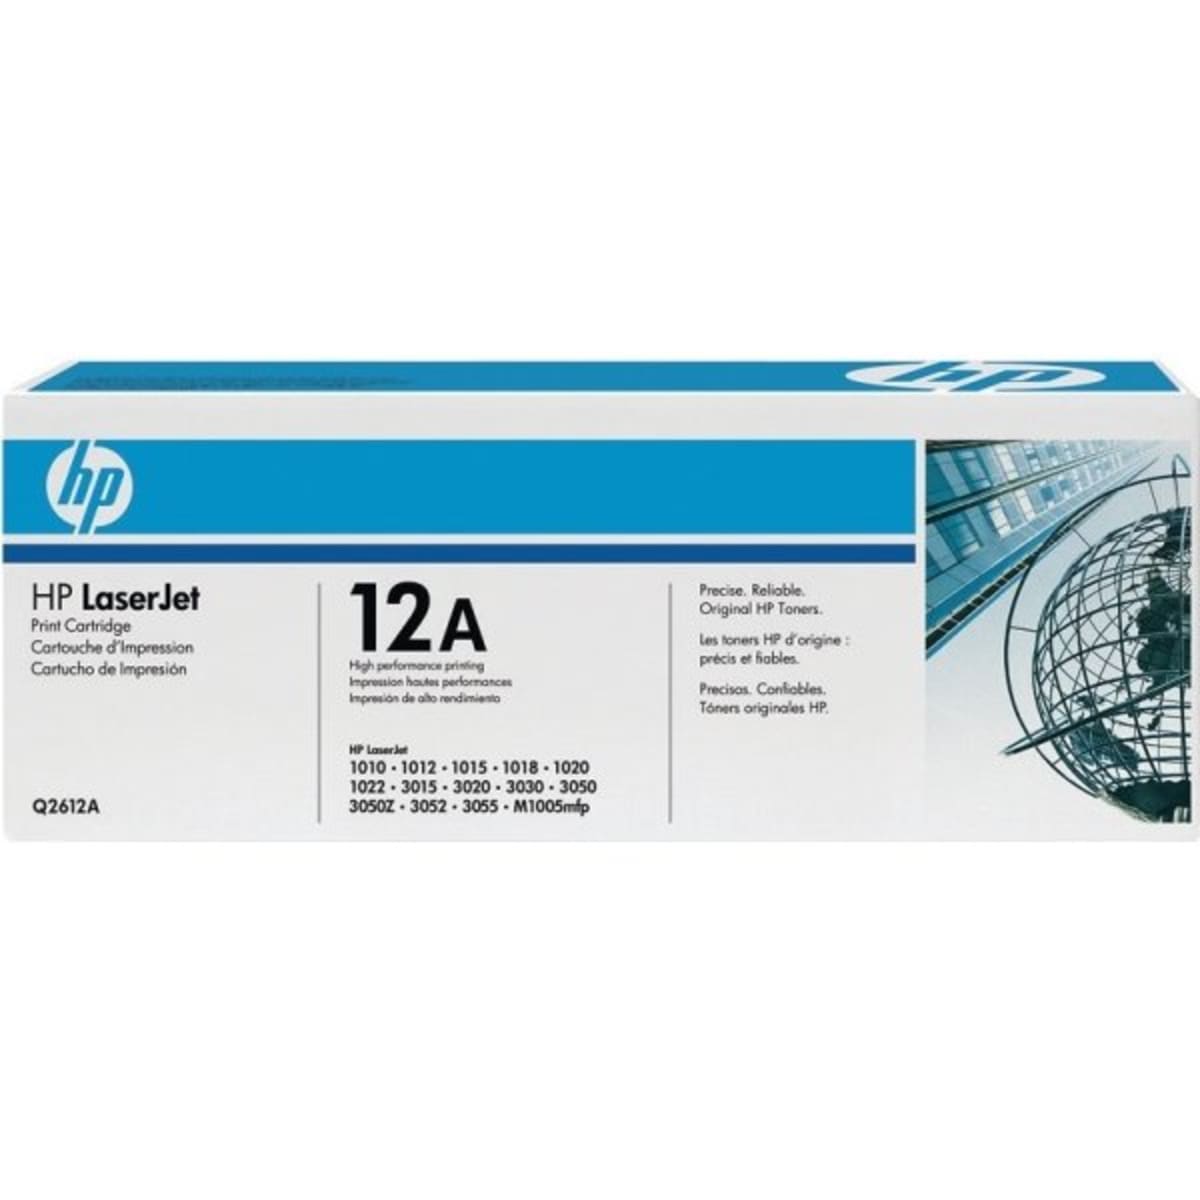 HP 12A Toner Model Q2612A, Black | HD Supply